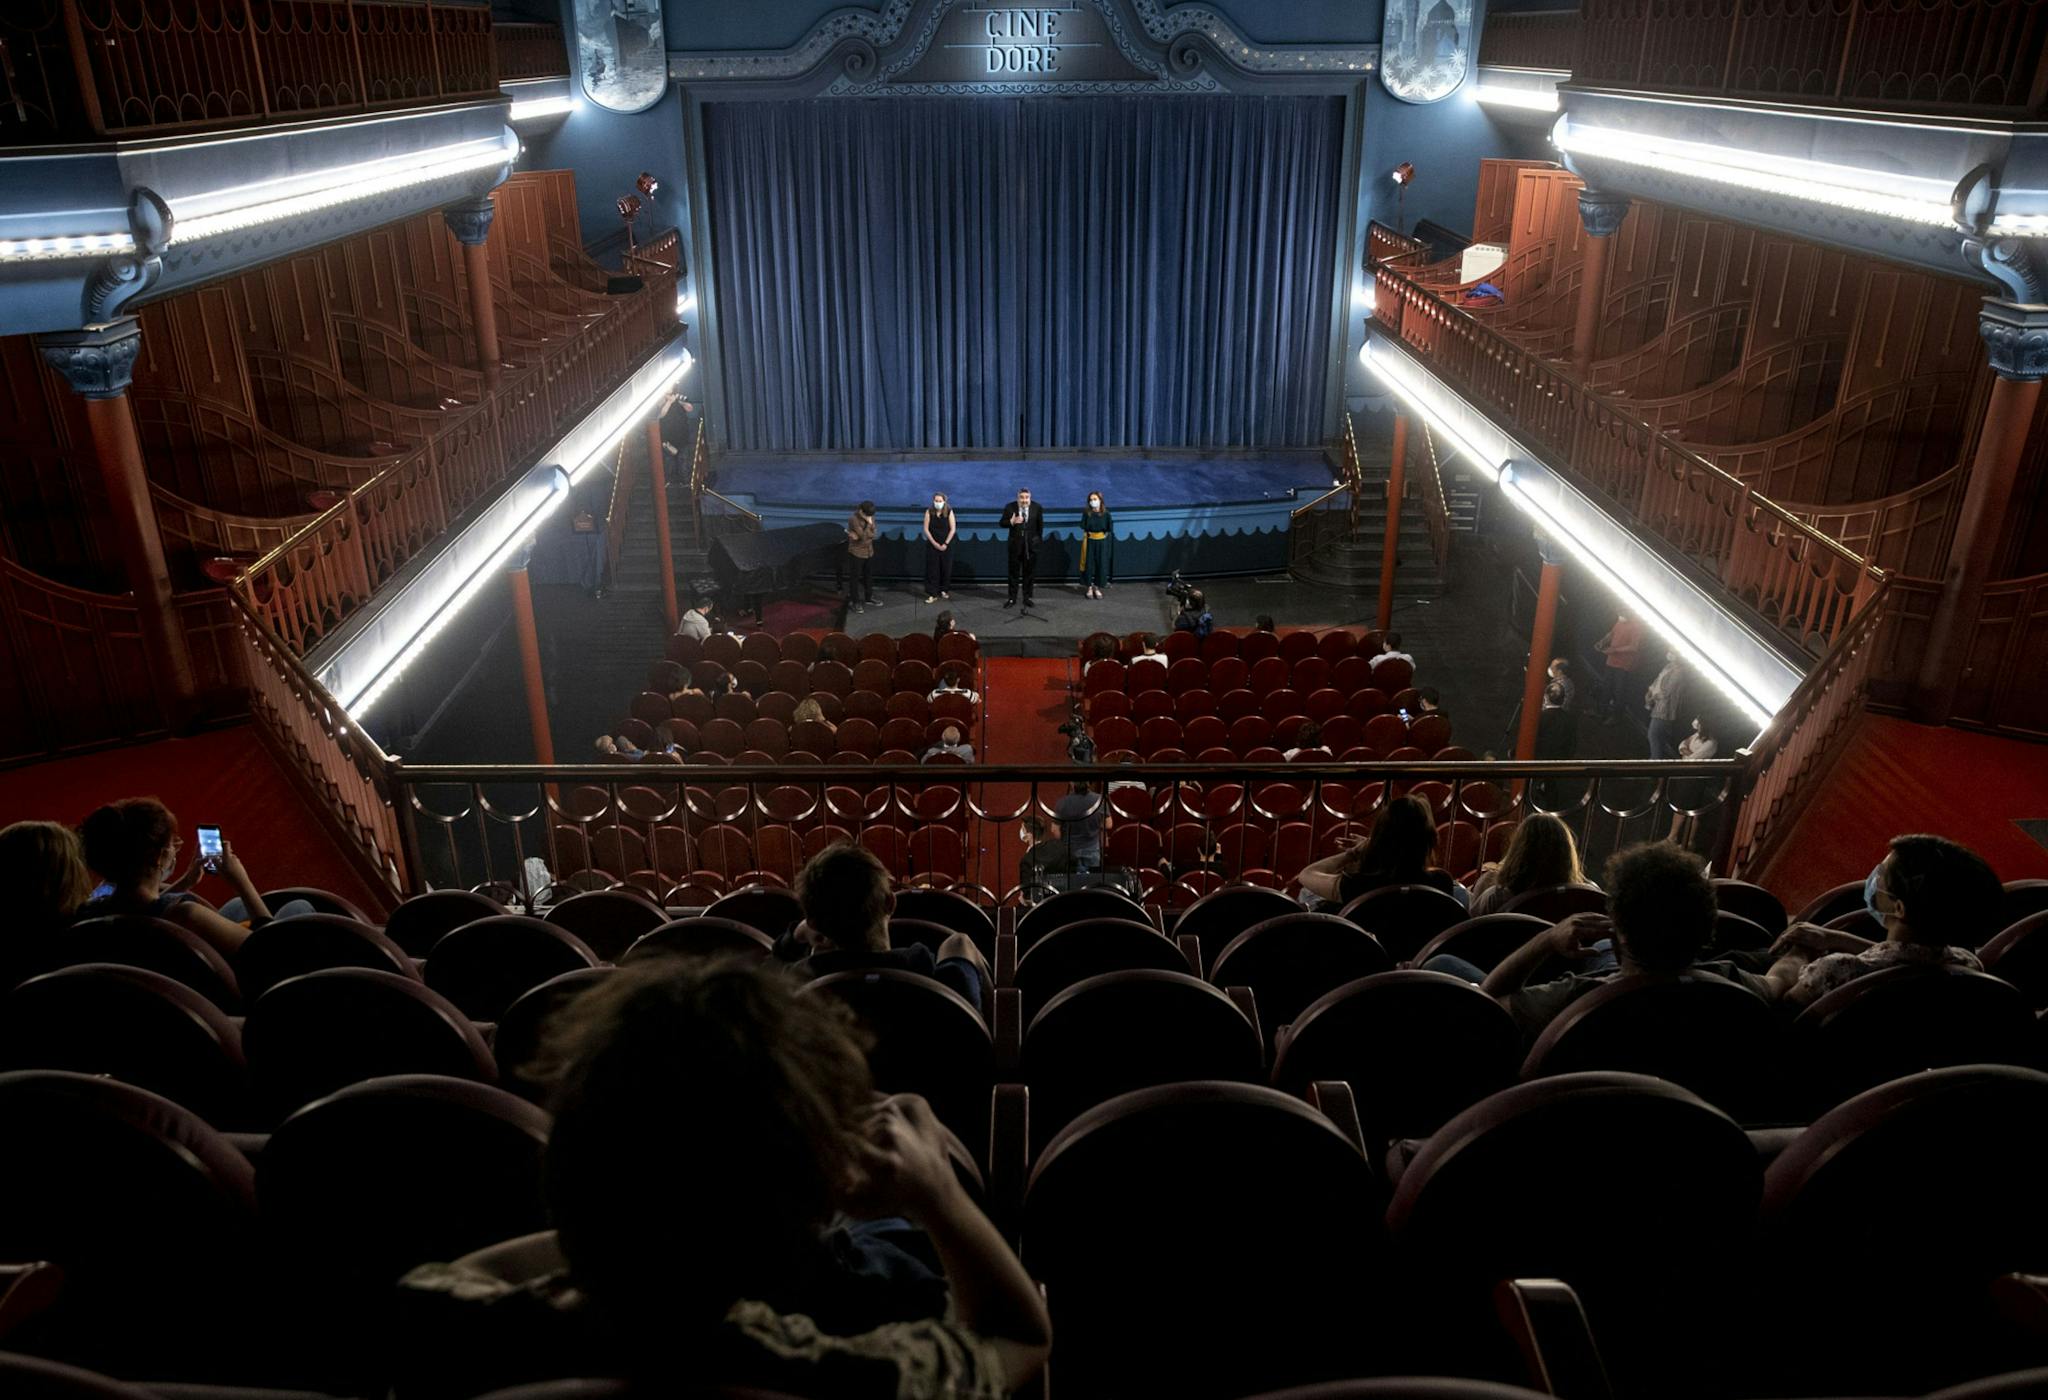 Los madrileños Cines Doré durante la celebración de un acto del exministro Uribes en 2020